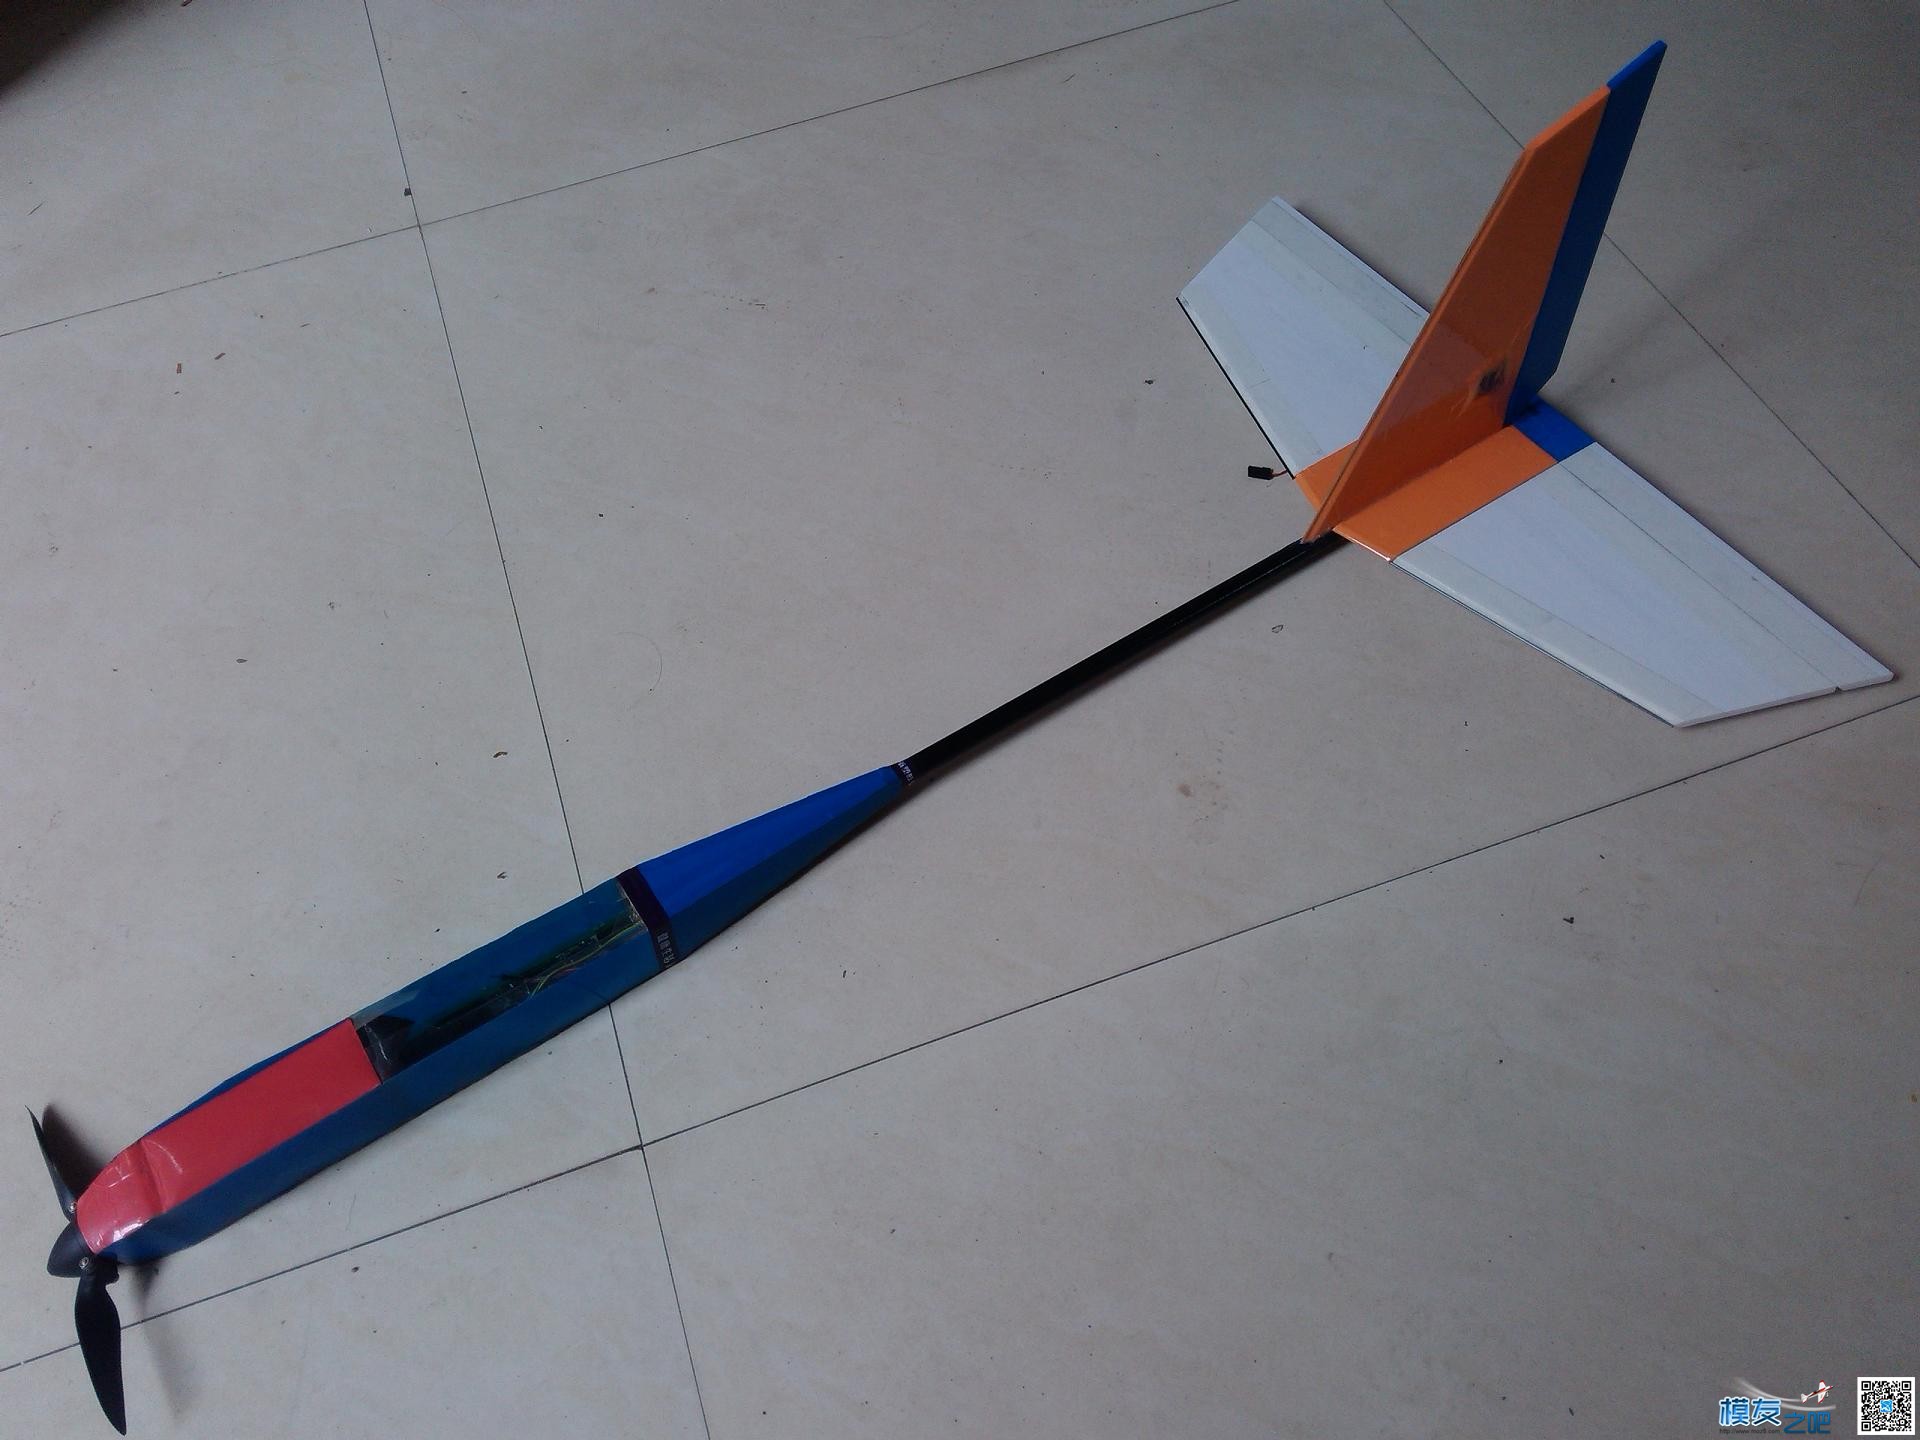 用瓶子折纸法制作滑翔机机头机身。已完成。老鸟别笑。.... 碳纤维,滑翔机,制作,专业 作者:cyb2688 3082 